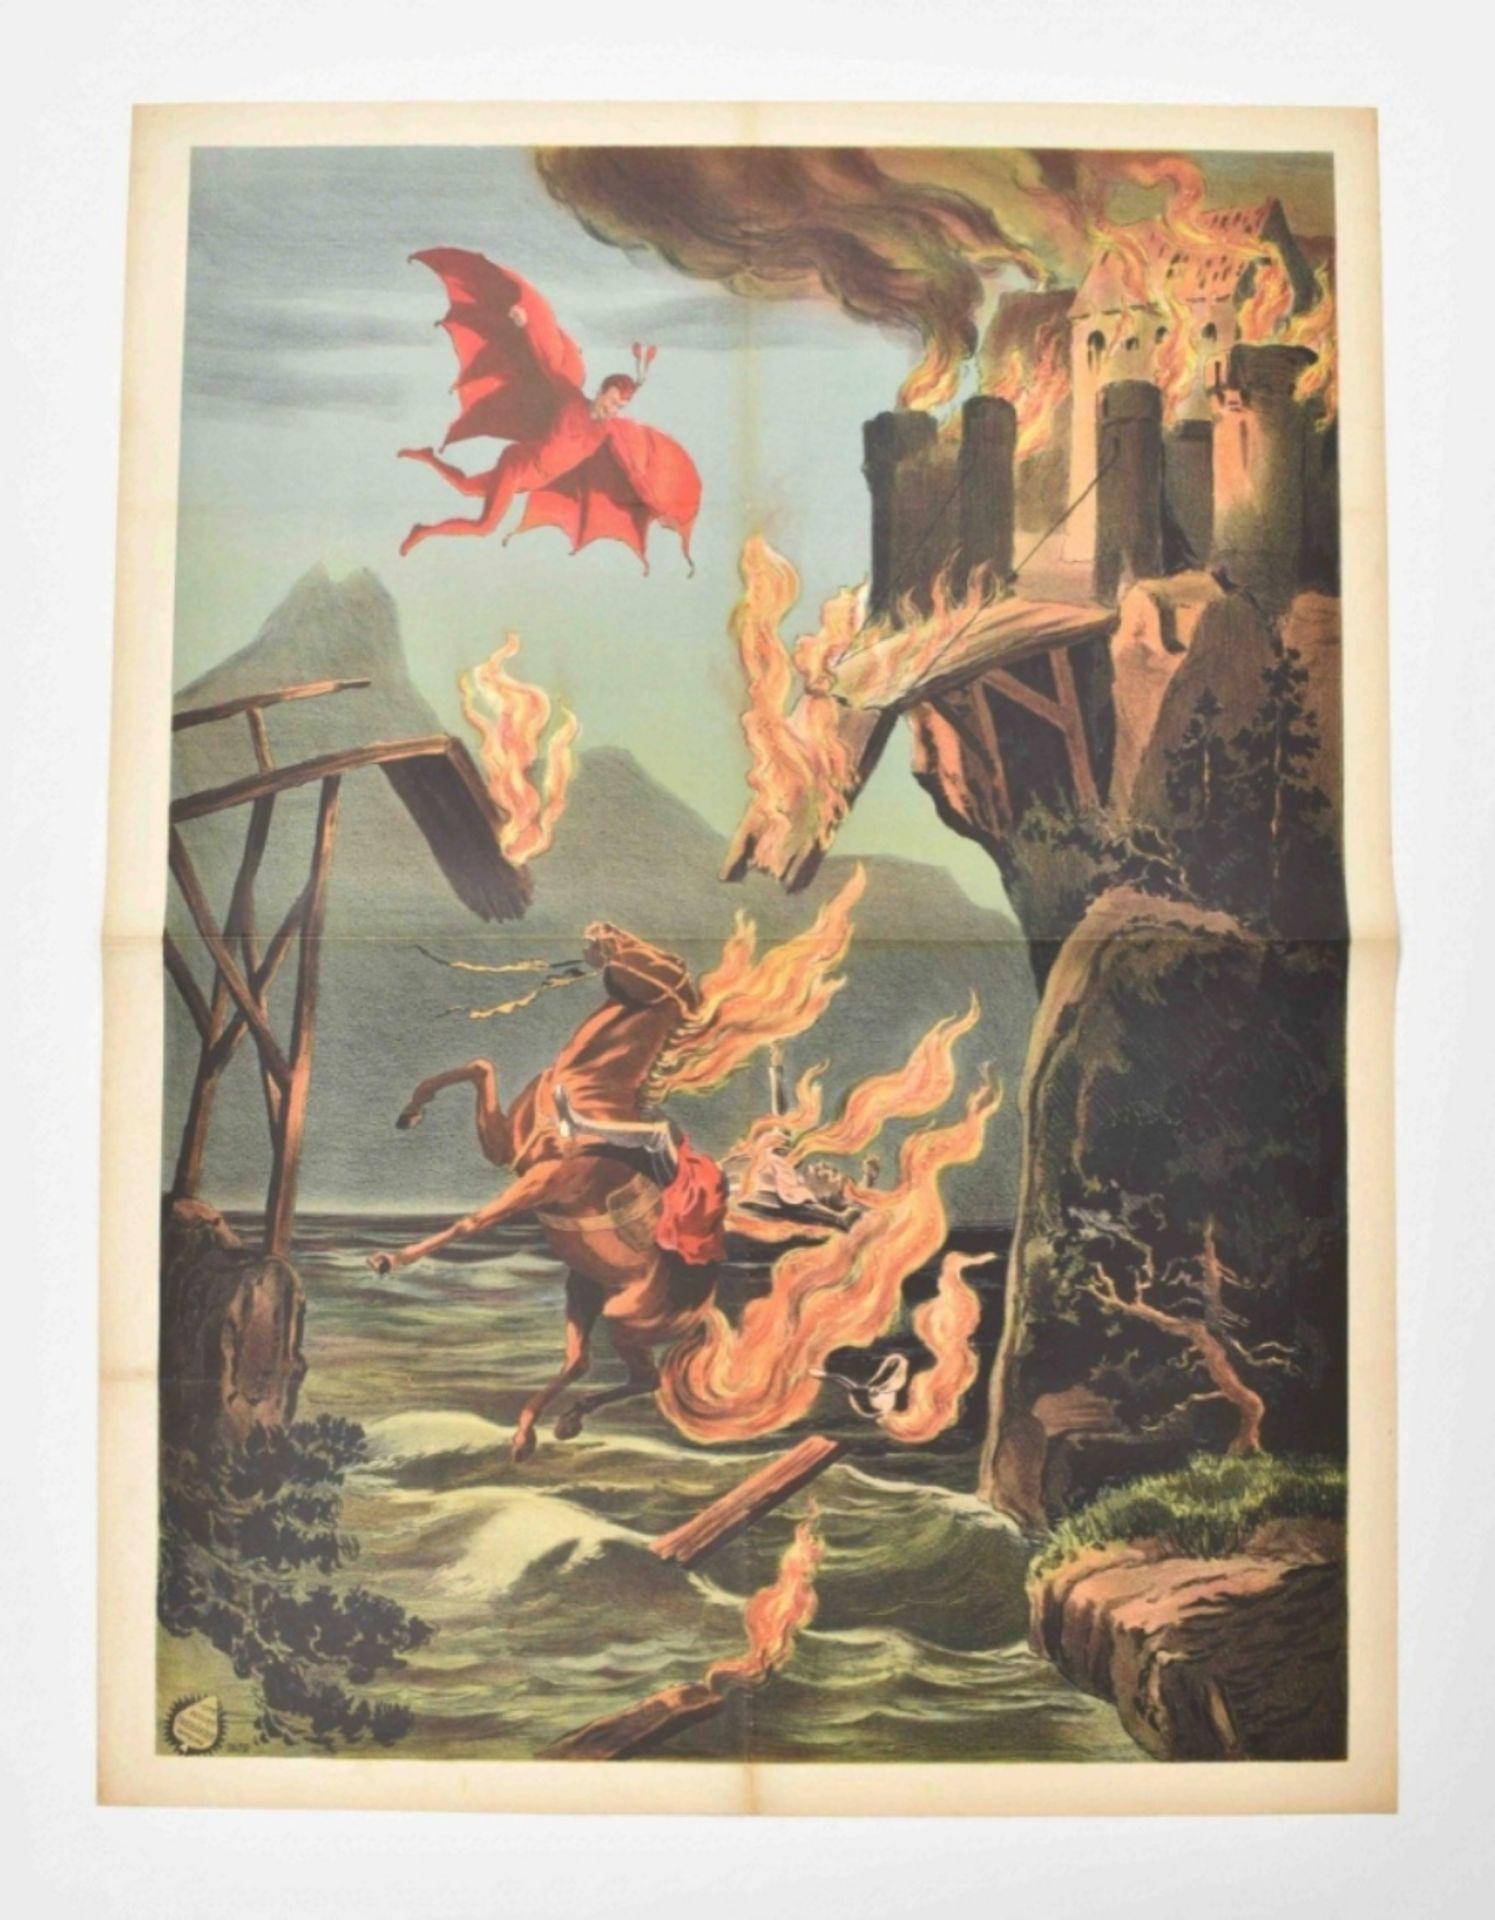 [Pantomime] "Mephisto burning a castle bridge" - Image 6 of 6